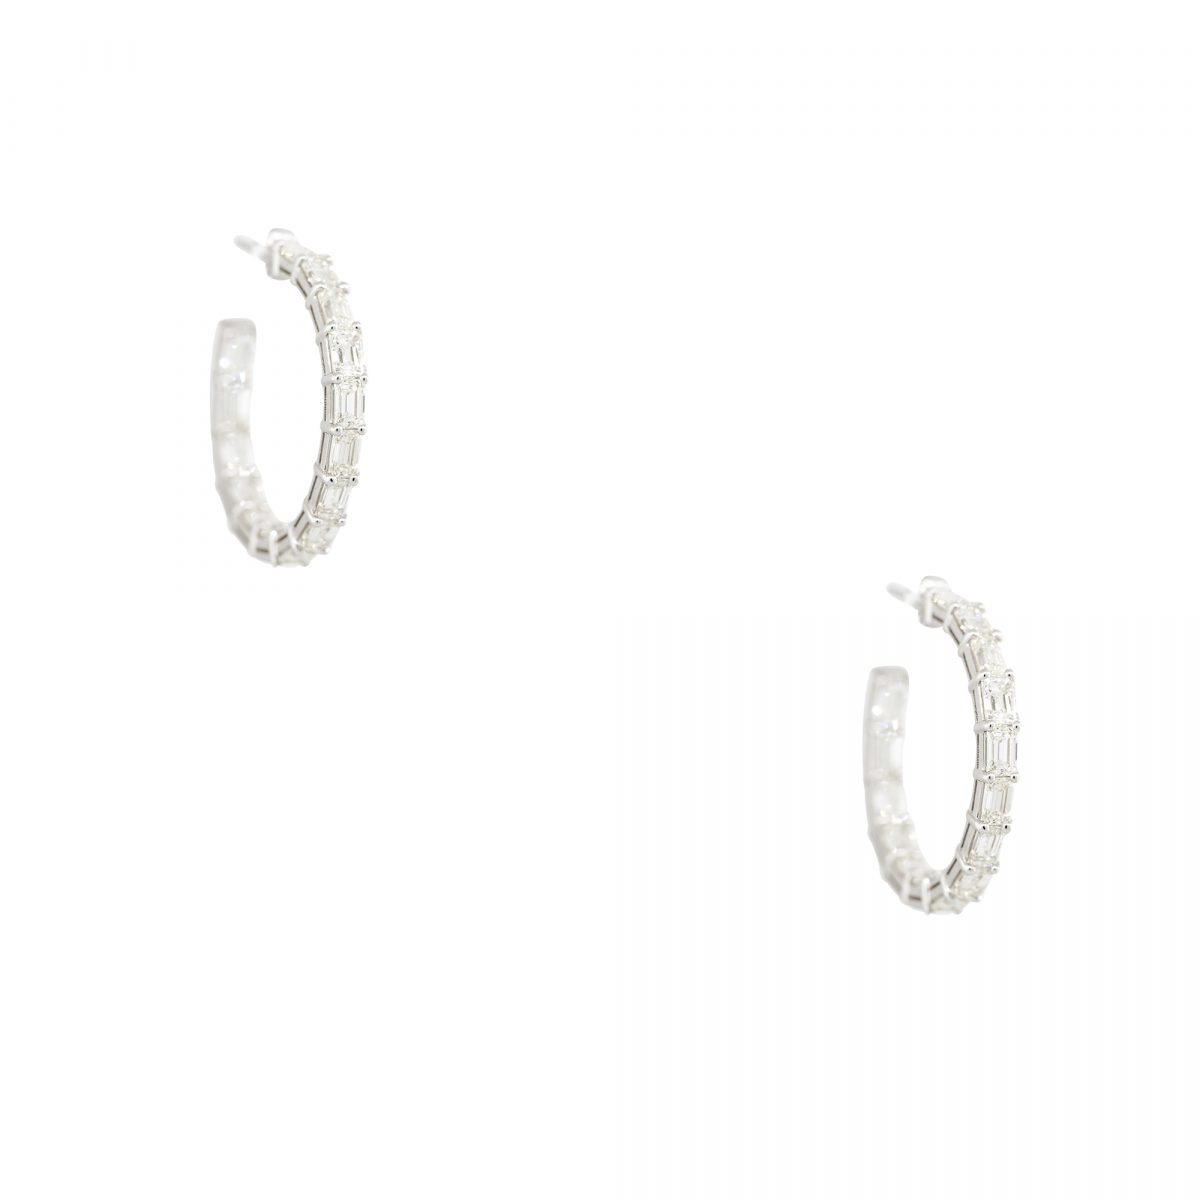 18k White Gold 5.70ctw Emerald Cut Diamond Hoop Earrings